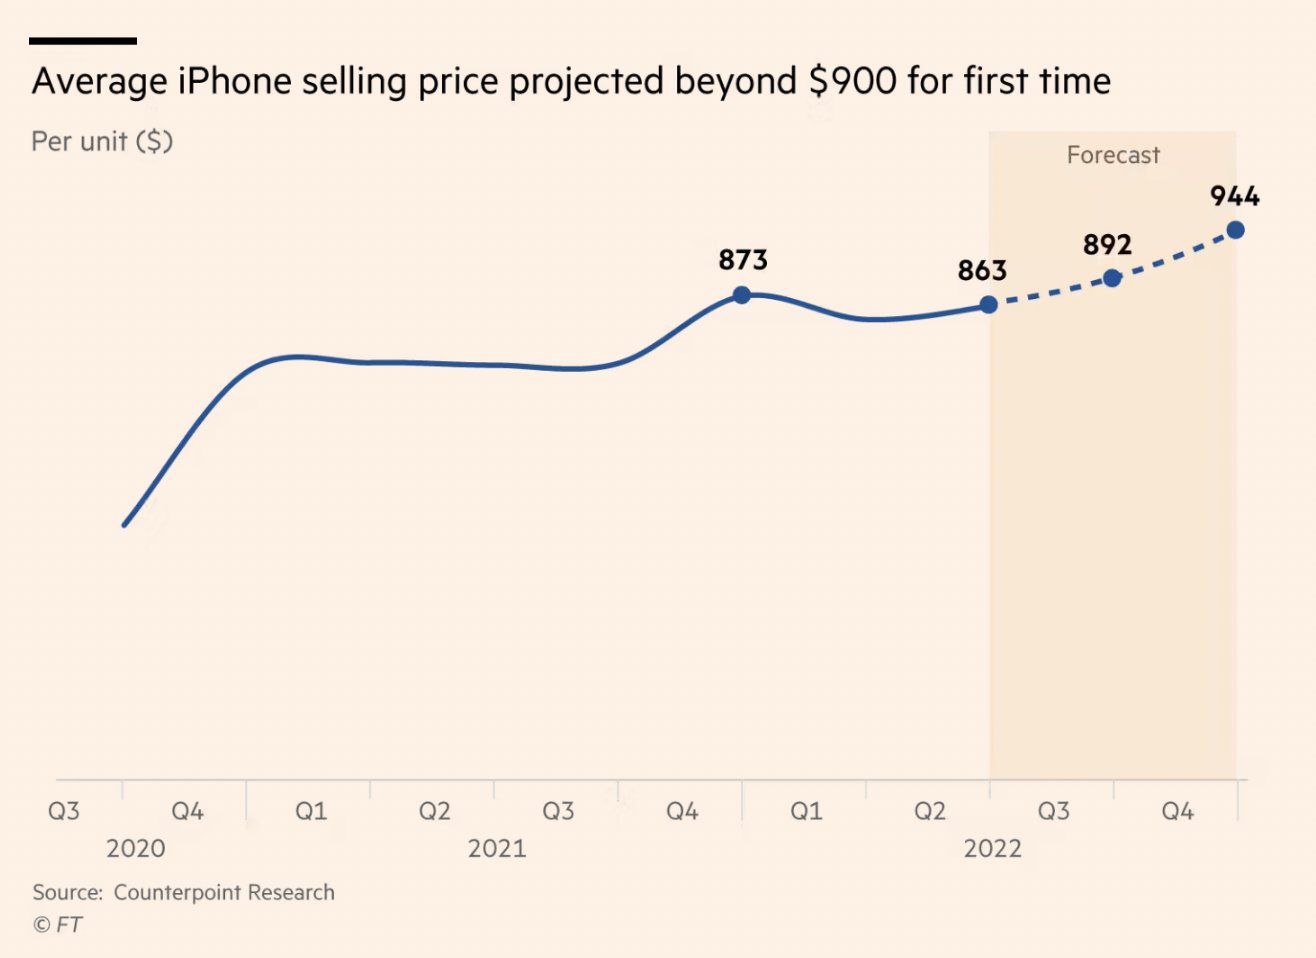 Giữ nguyên giá iPhone 14, Apple vẫn khiến giá bán iPhone trung bình toàn cầu tăng cao kỷ lục - Ảnh 1.